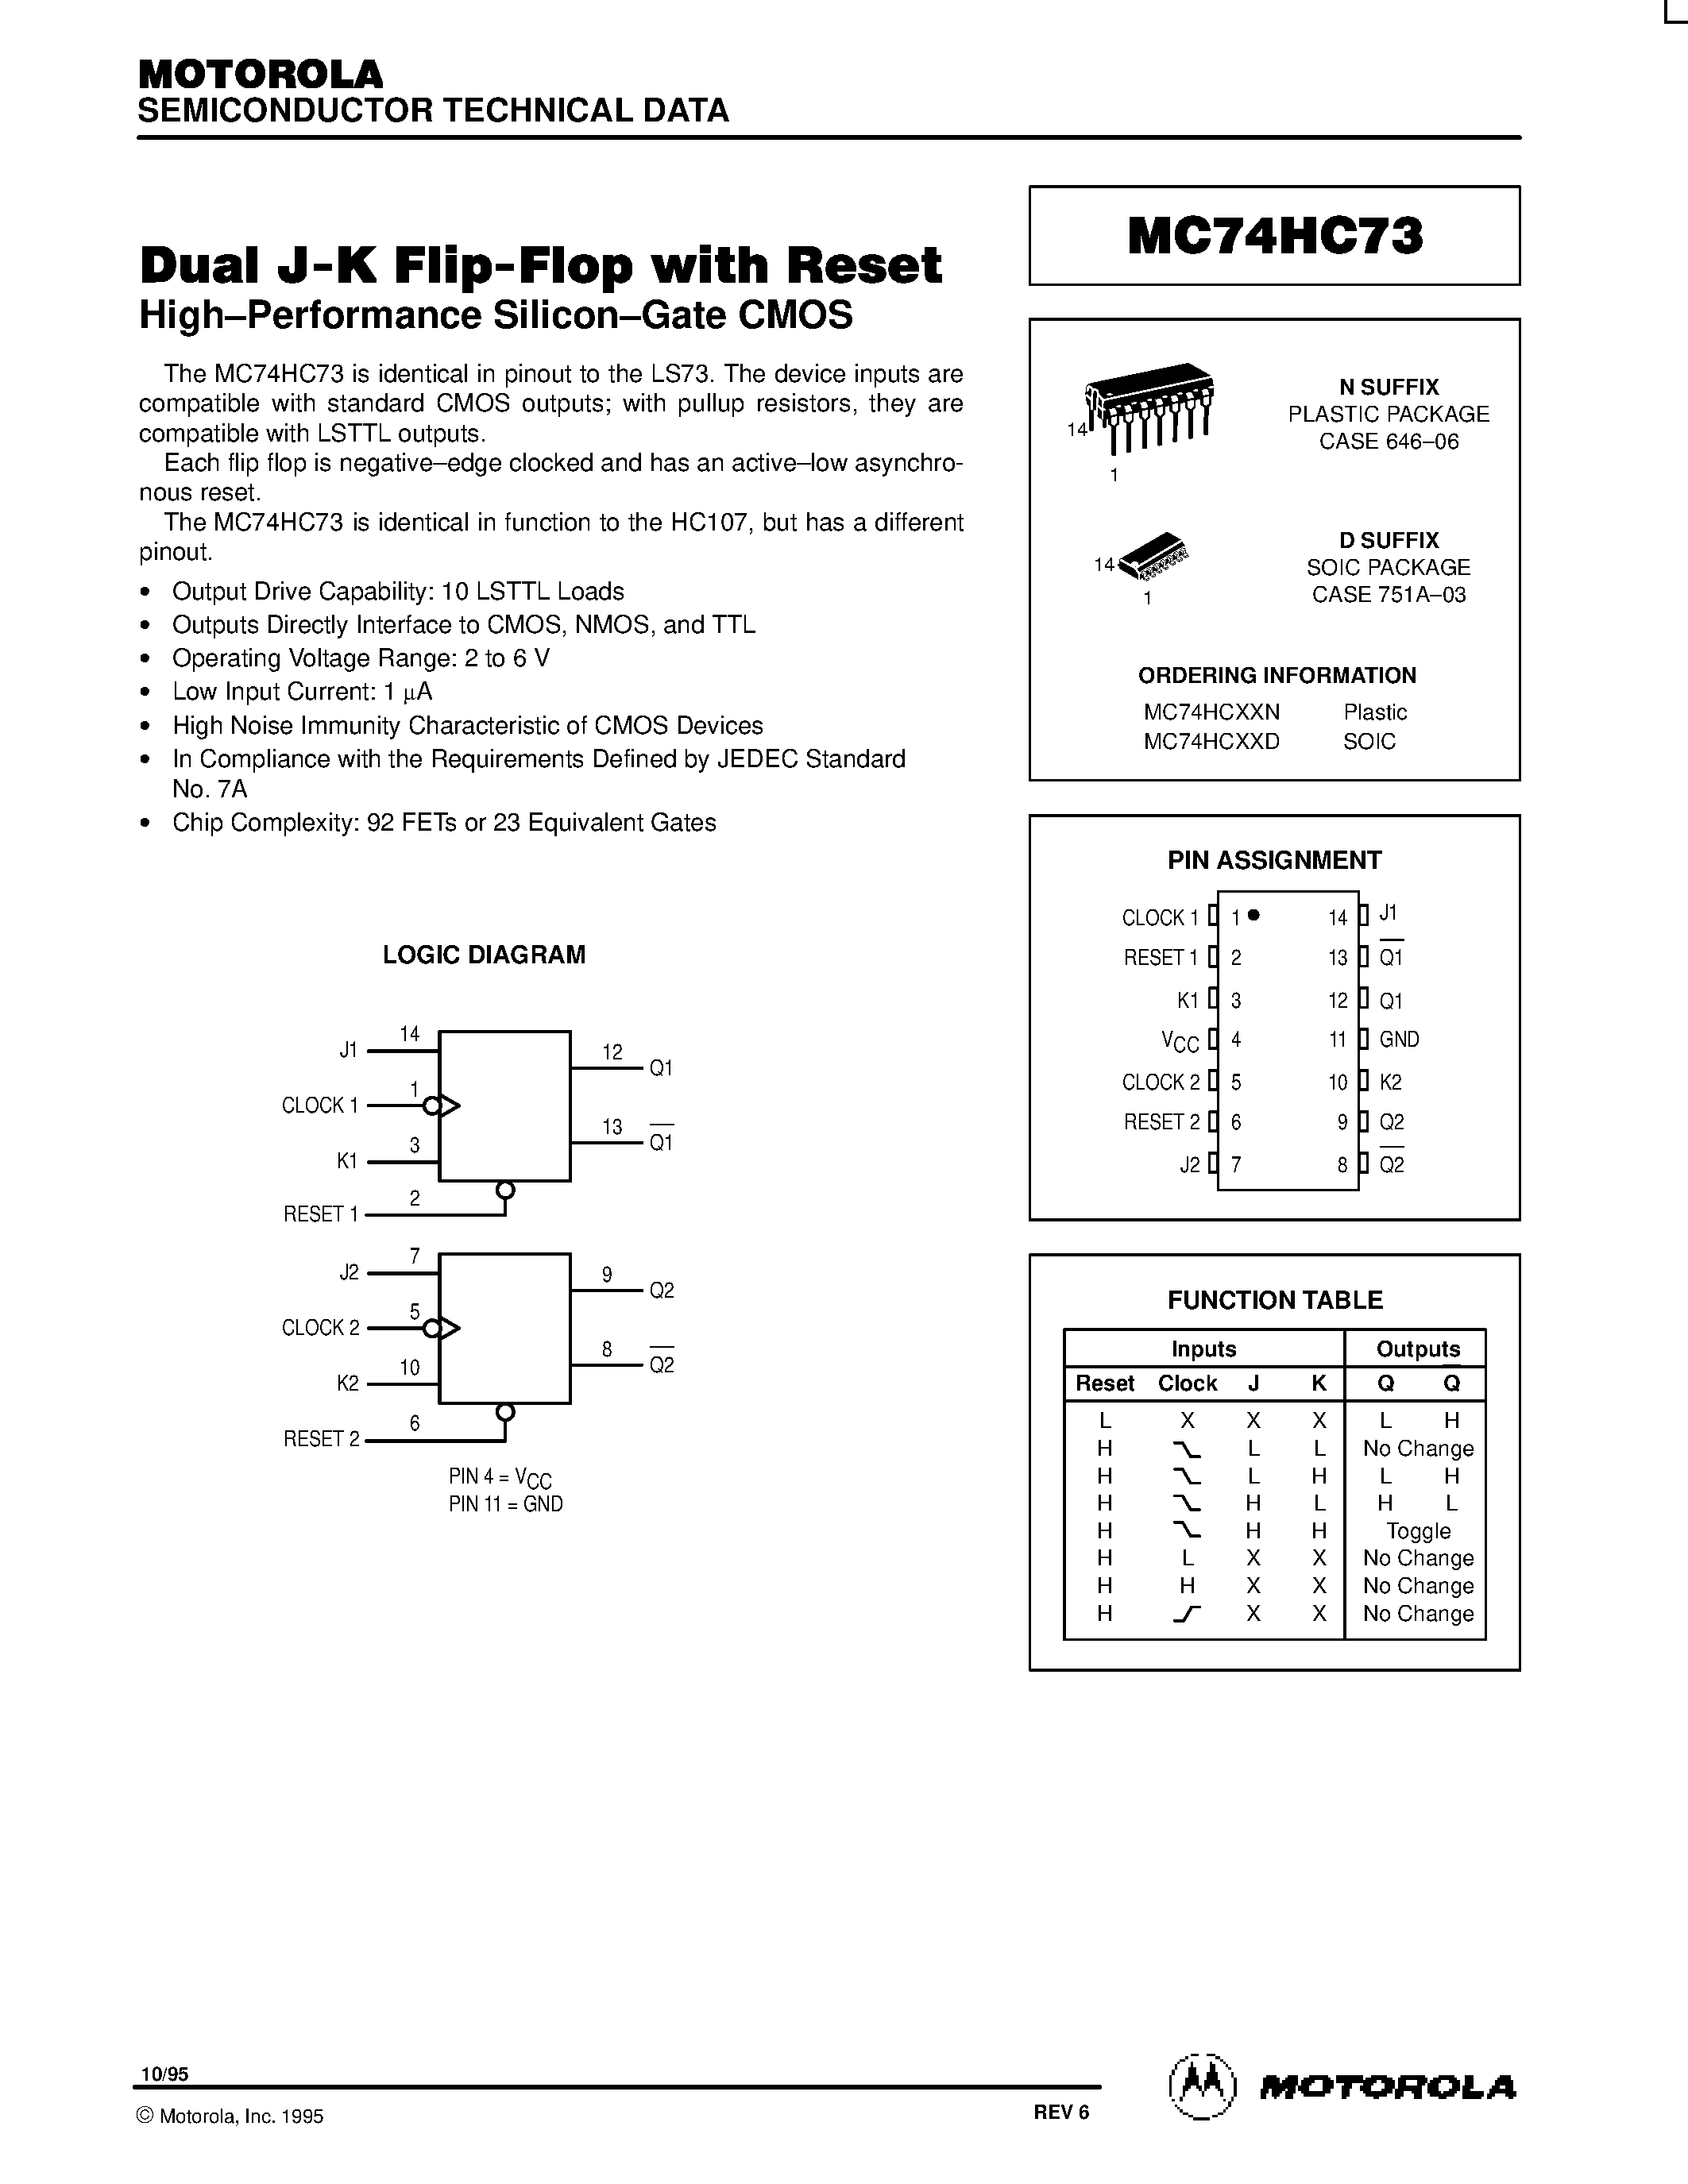 Даташит MC74HC73 - Dual J-K Flip-Flop with Reset страница 1